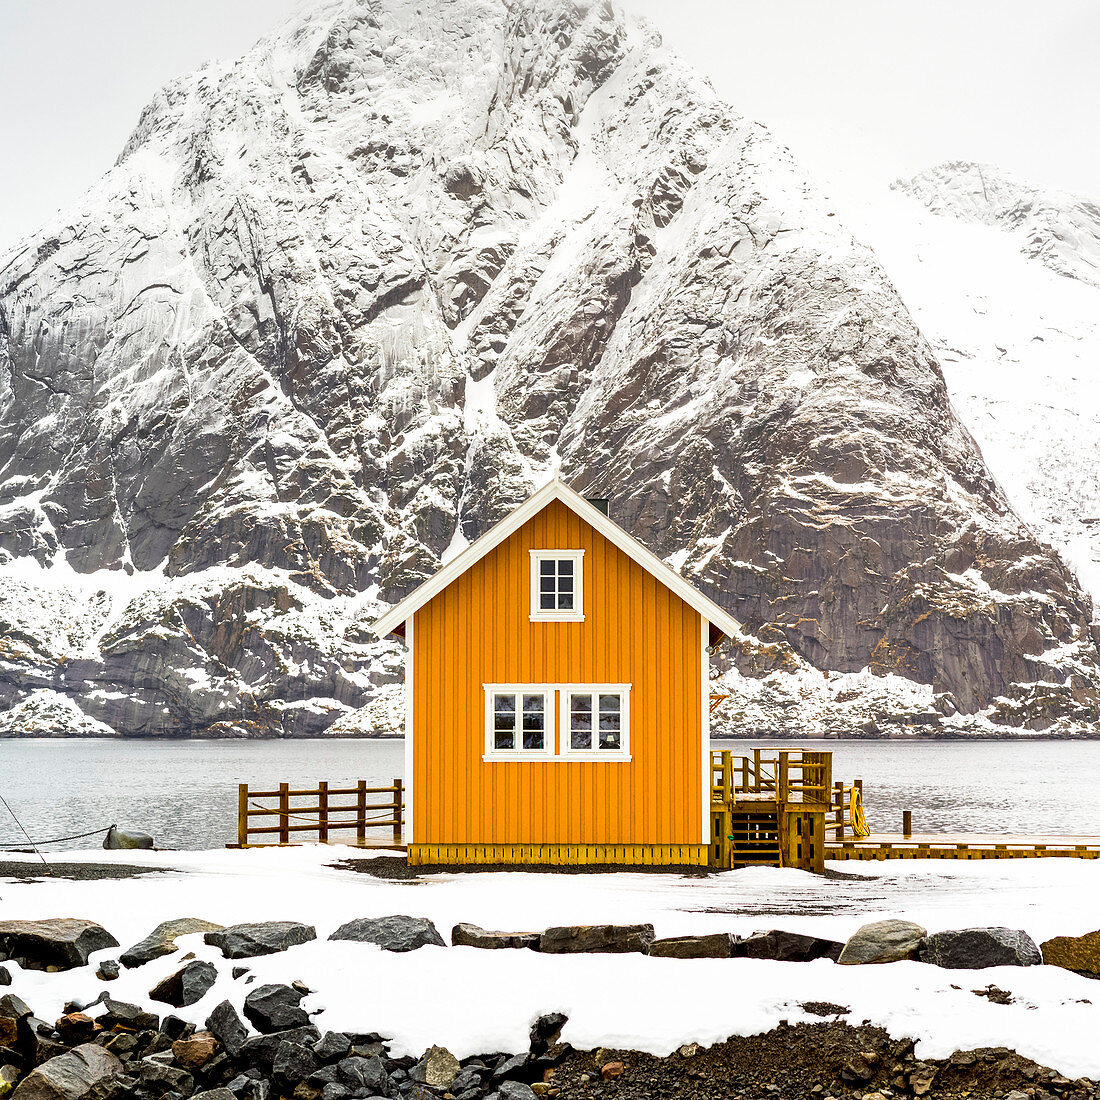 'Ein helles gelbes Gebäude am Wasserrand mit einem schneebedeckten Berg hinten; Nordland, Norwegen'